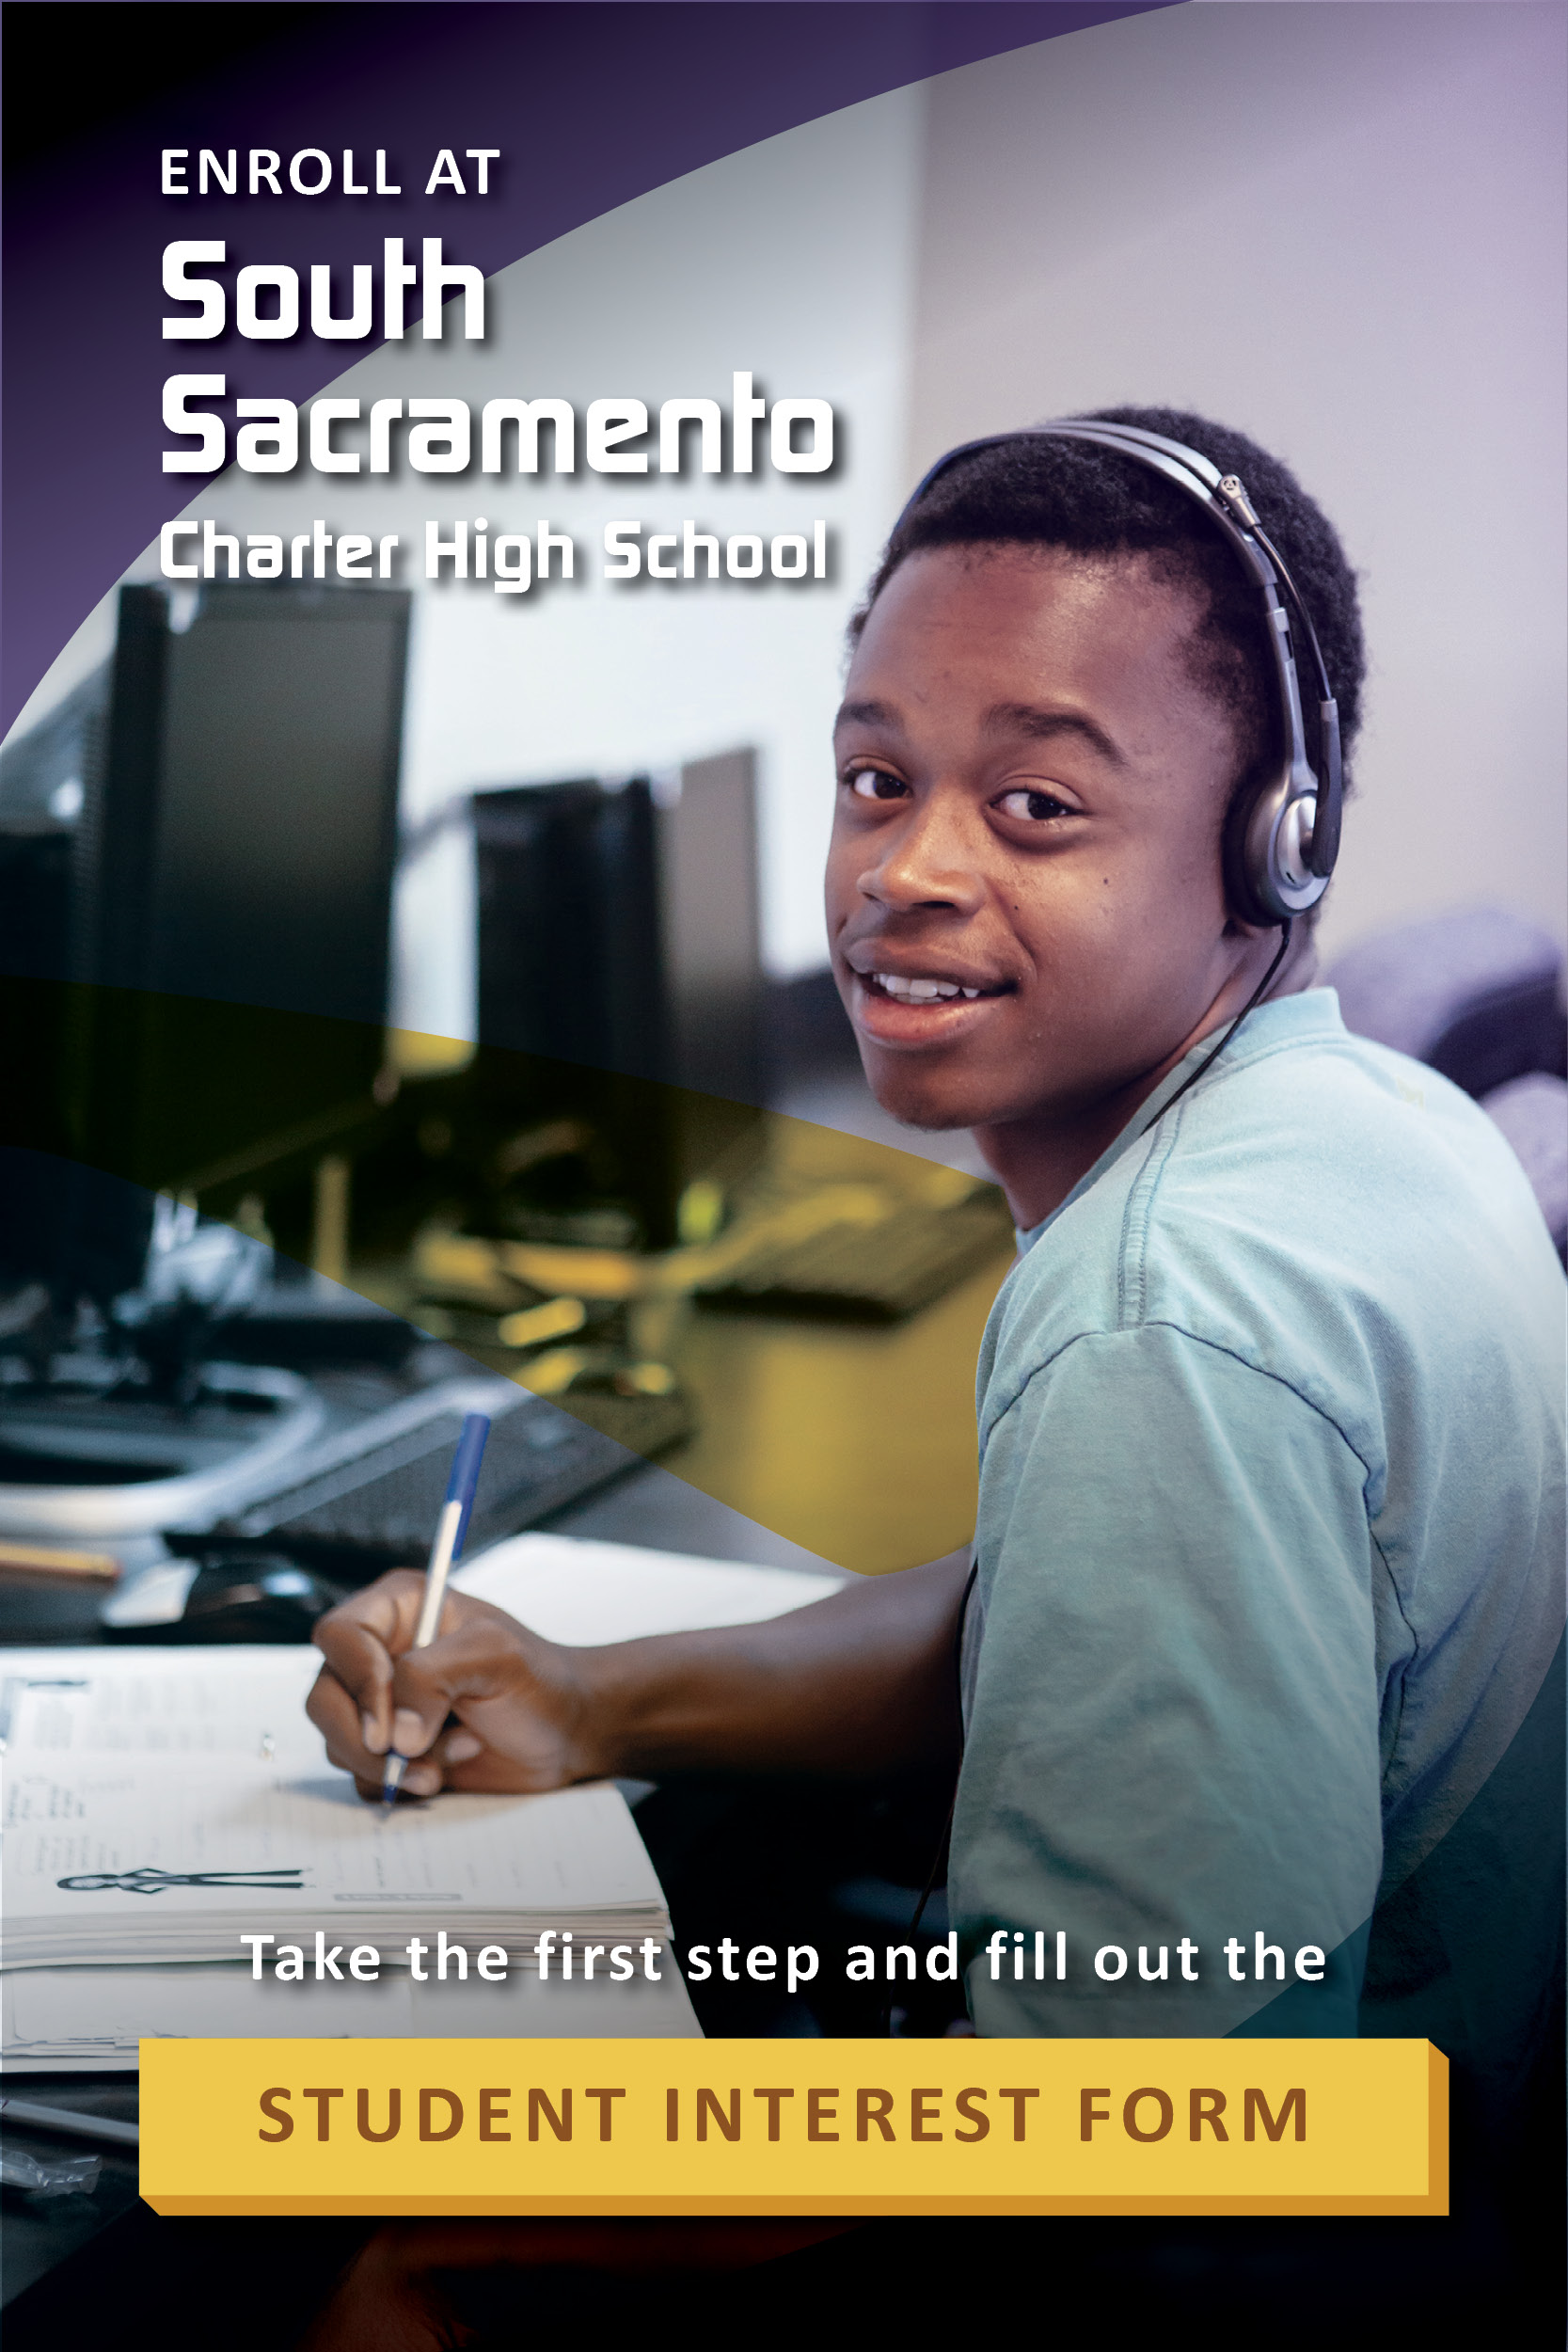 South-Sacramento-Charter-High-School-Diploma